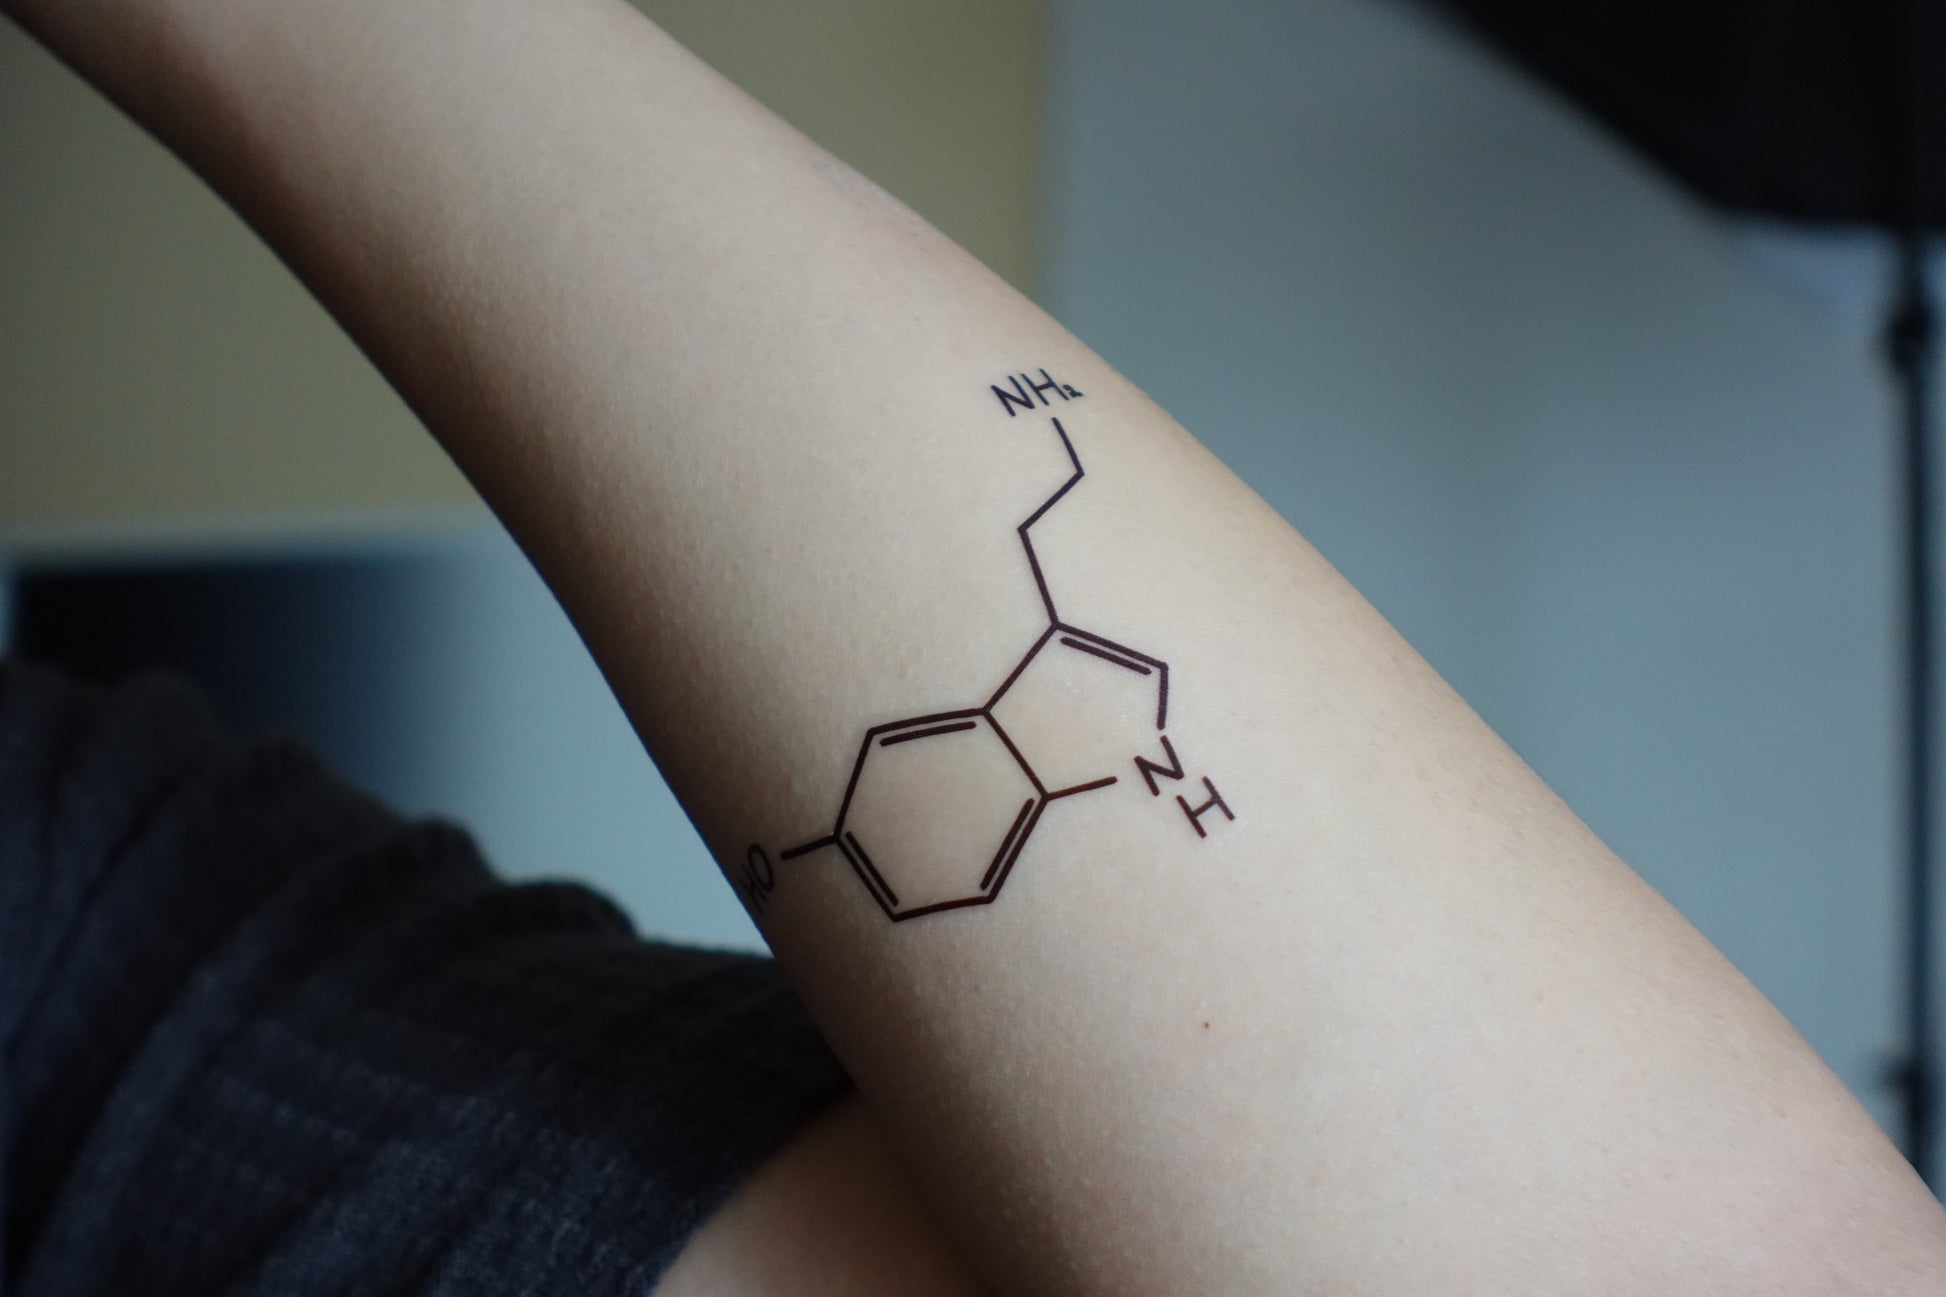 serotonin and dopamine tattoo